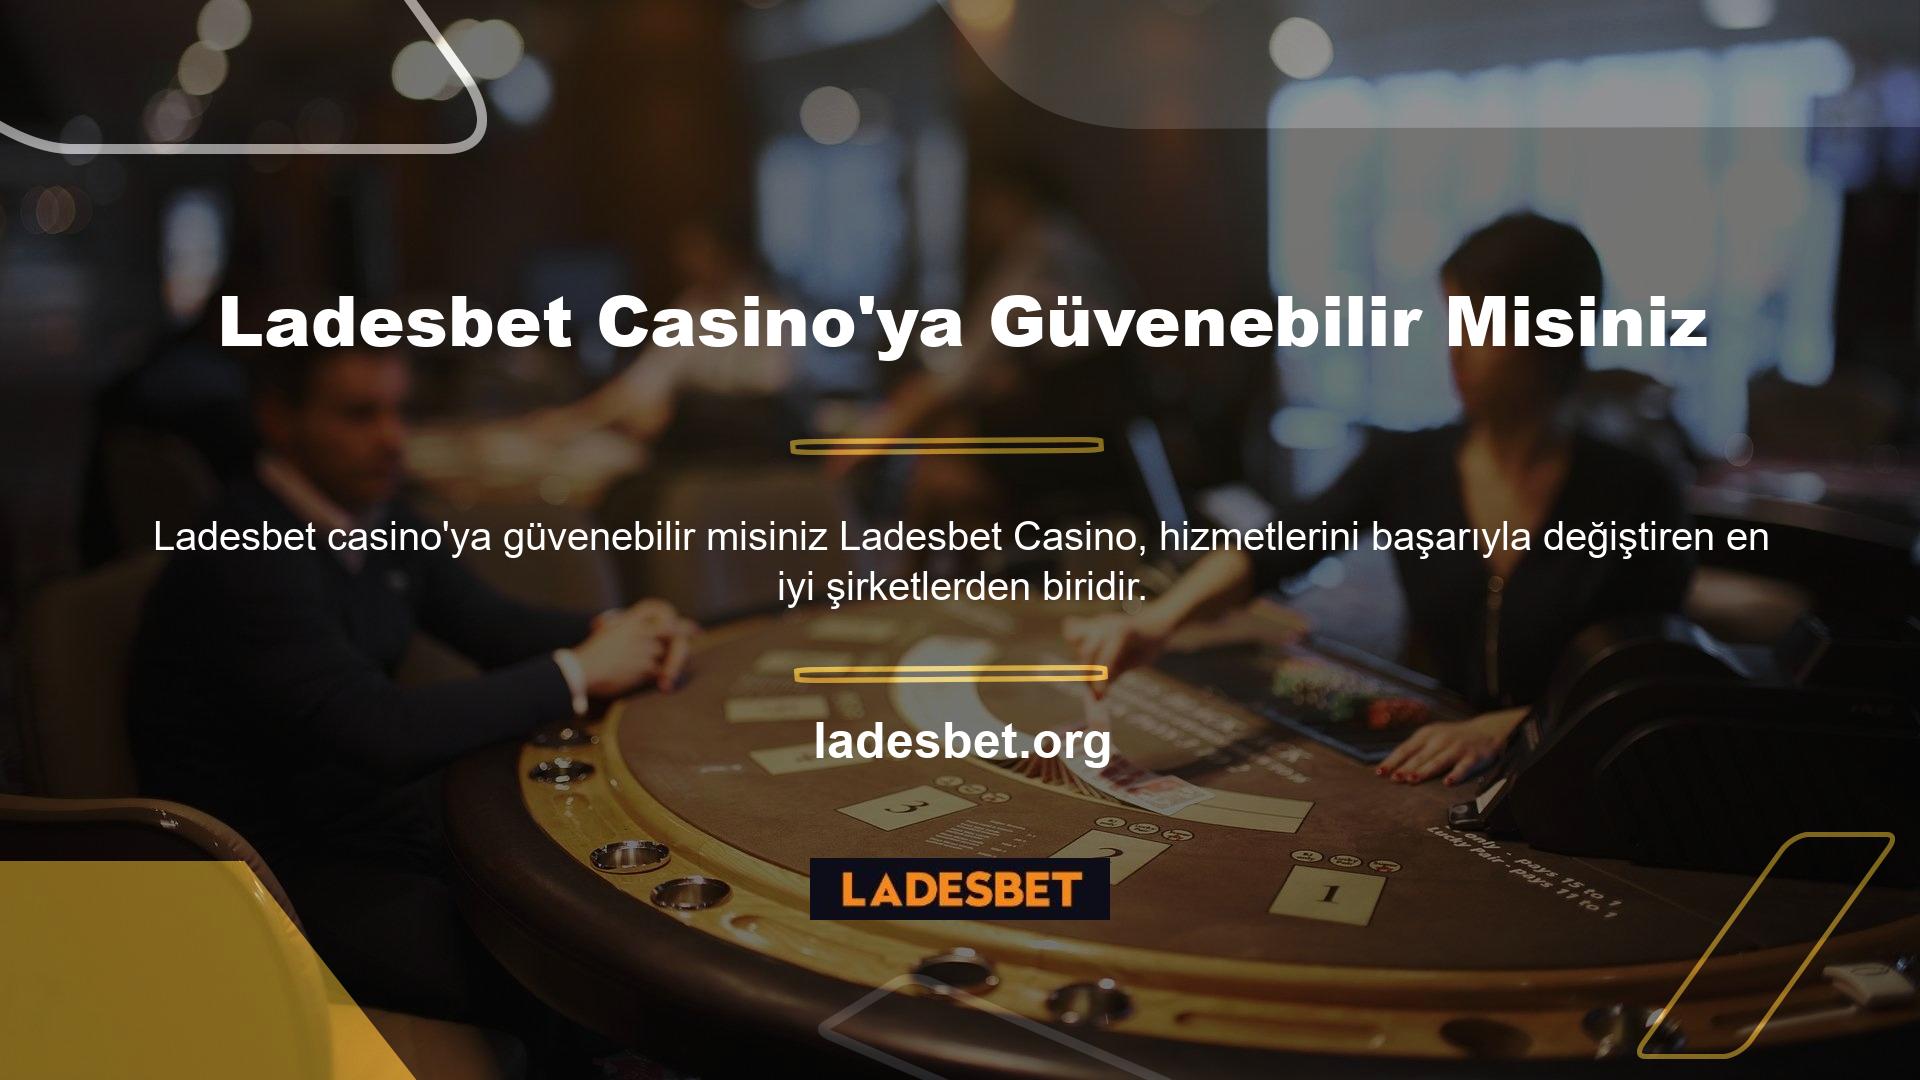 Ladesbet canlı casino hizmeti gerçek krupiyerlerle oyun oynamanıza olanak sağlar